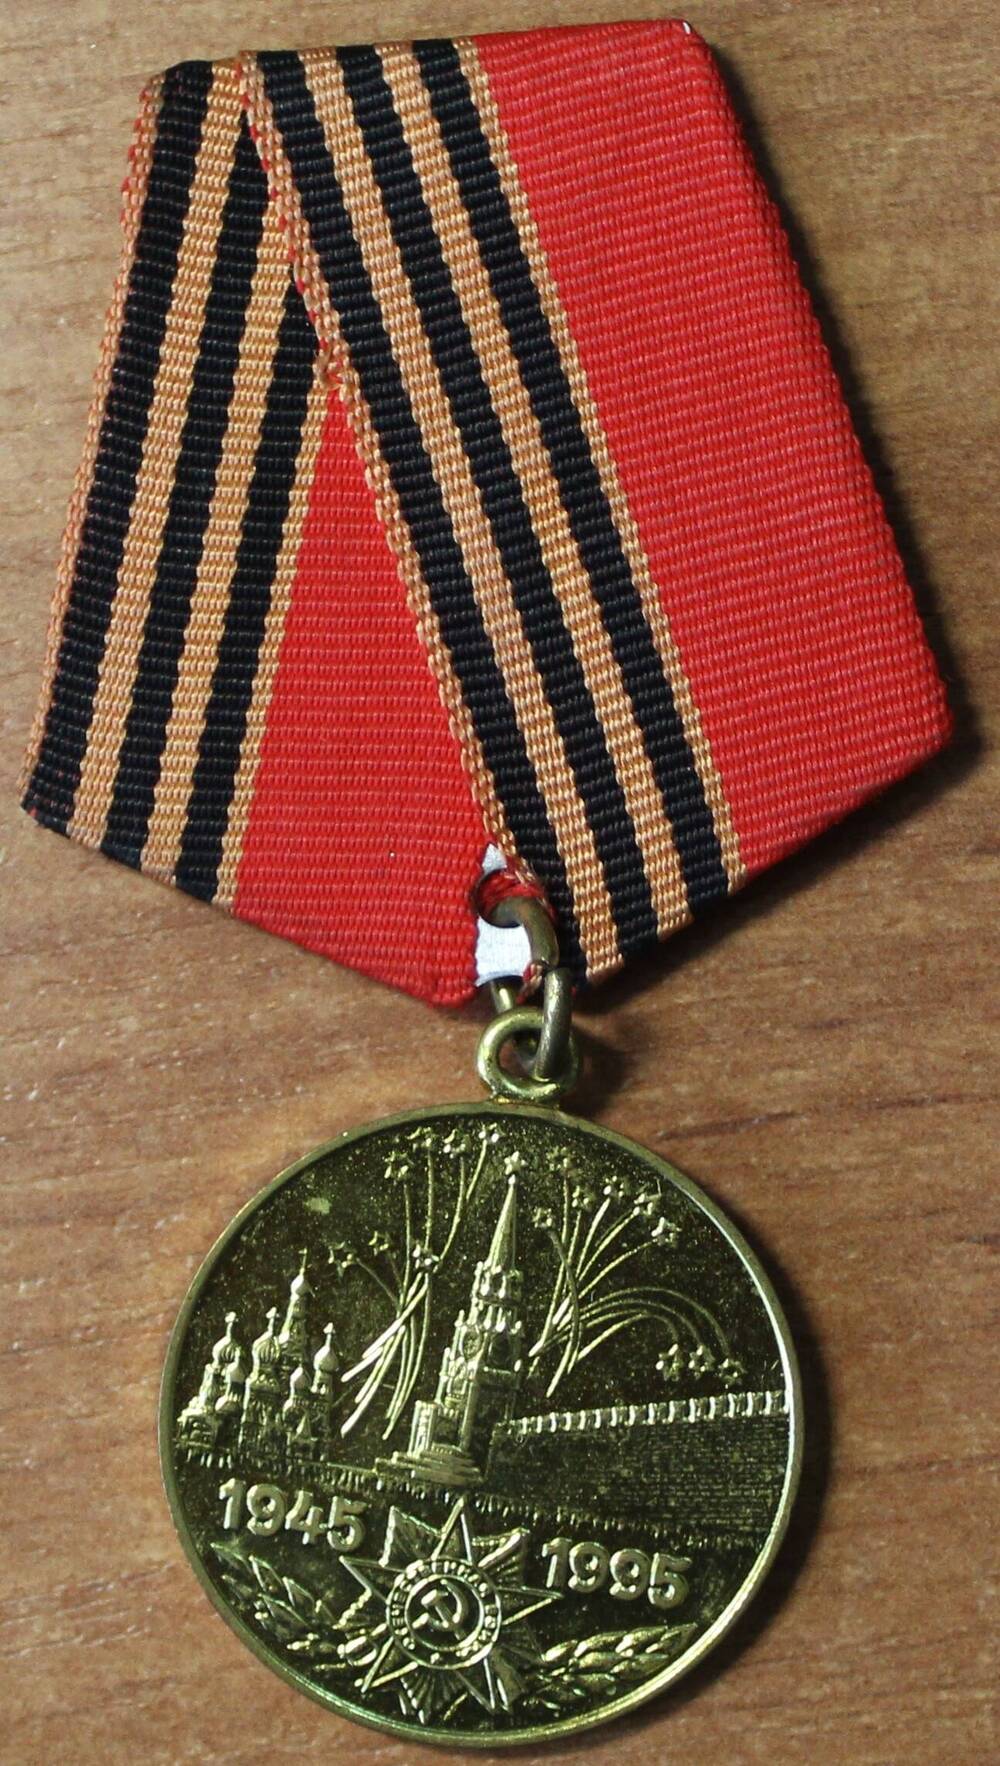 Медаль юбилейная 50 лет Победы в ВОВ, Дыкиной В.К., 1995 г.